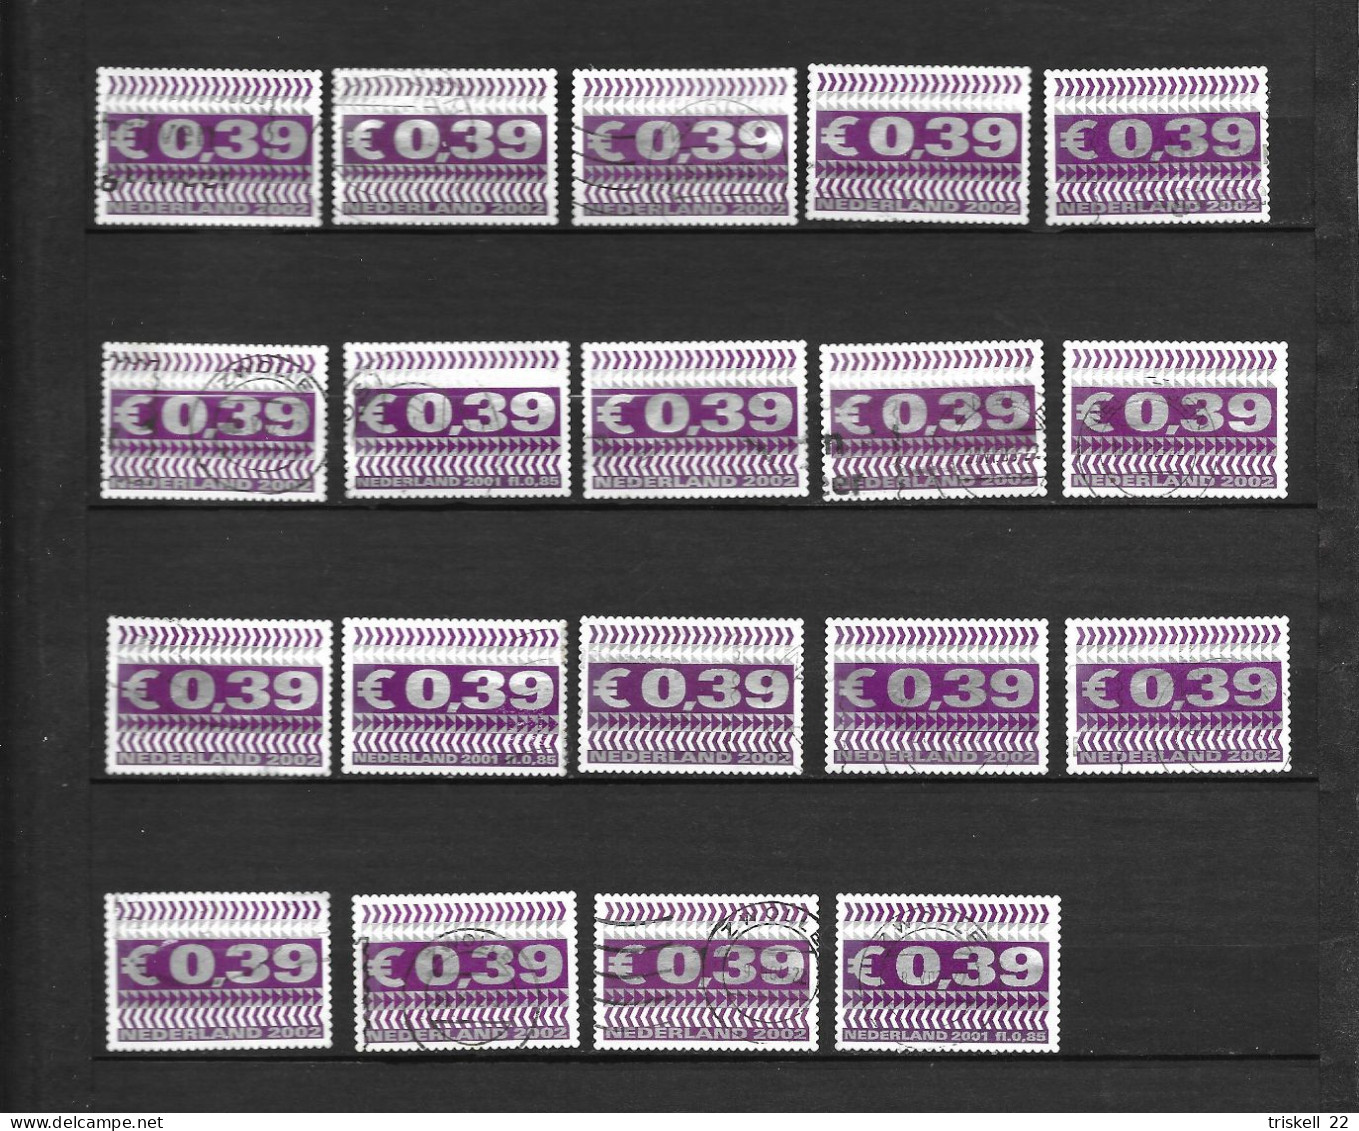 Pays-Bas : lot de 186 timbres oblitérés toutes époques